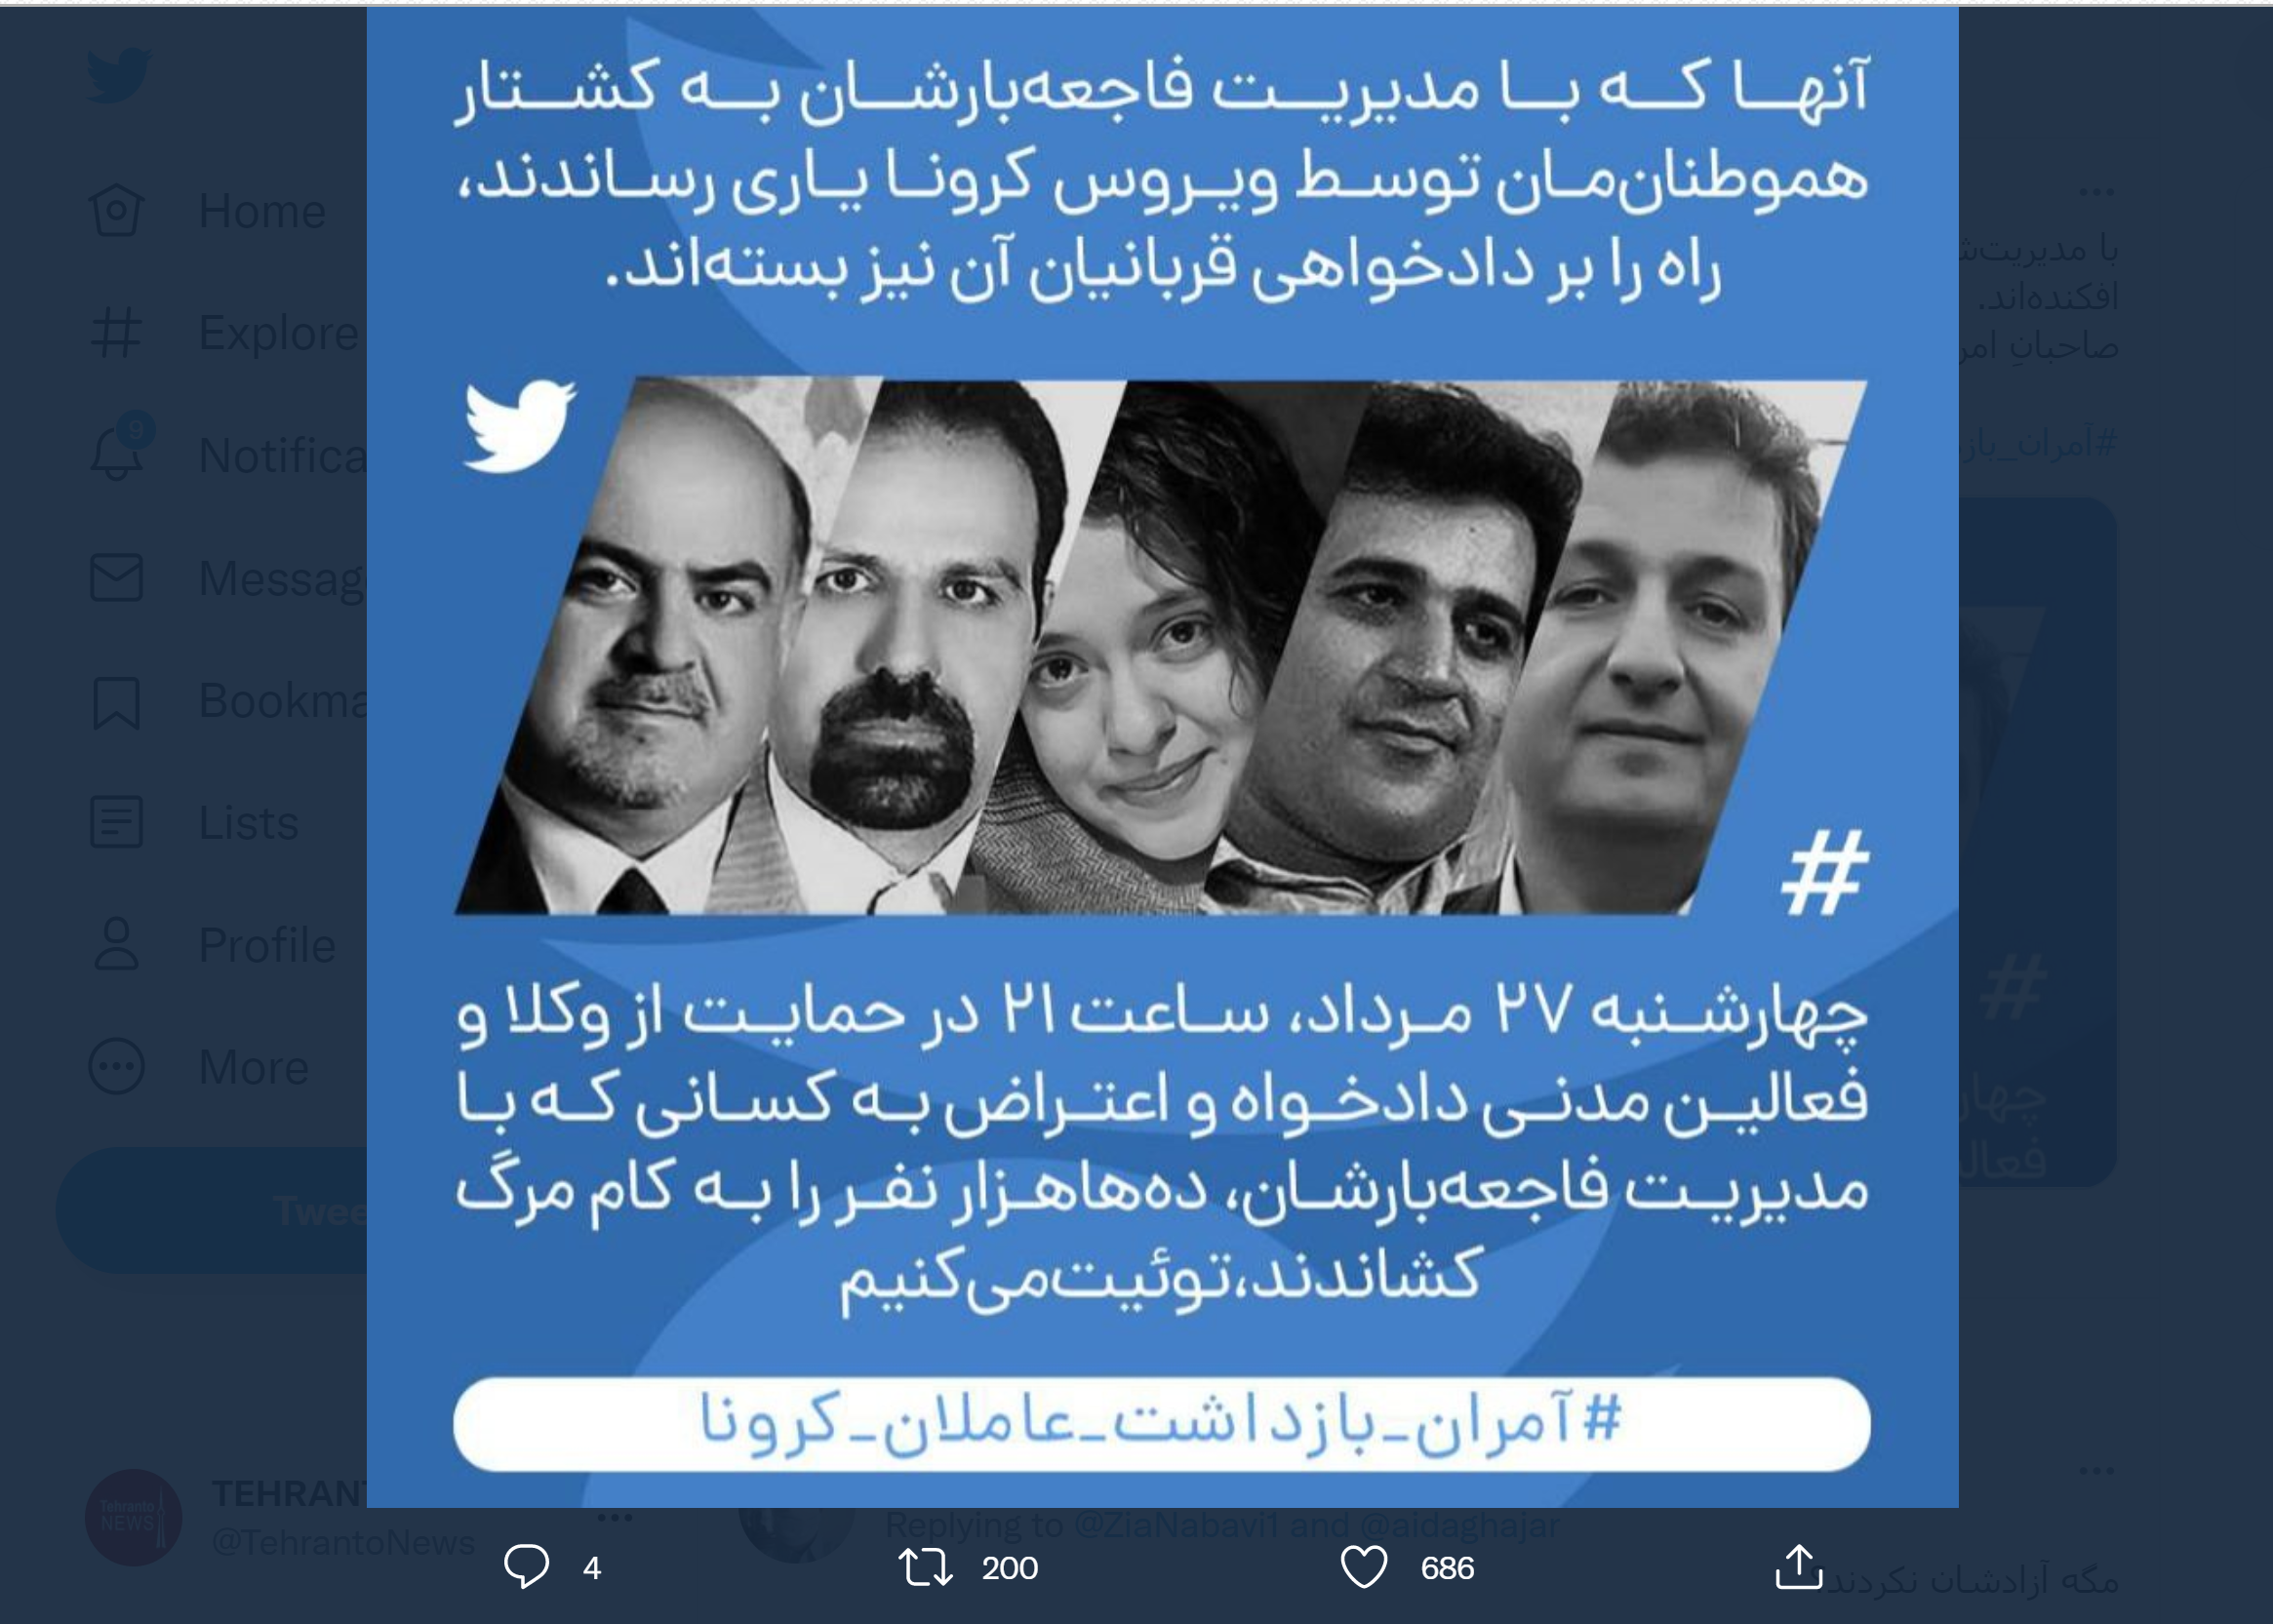 کارزار توییتری اعتراض به بازداشت وکلا و فعالان مدنی با هشتگ #آمران_بازداشت_عاملان_کرونا